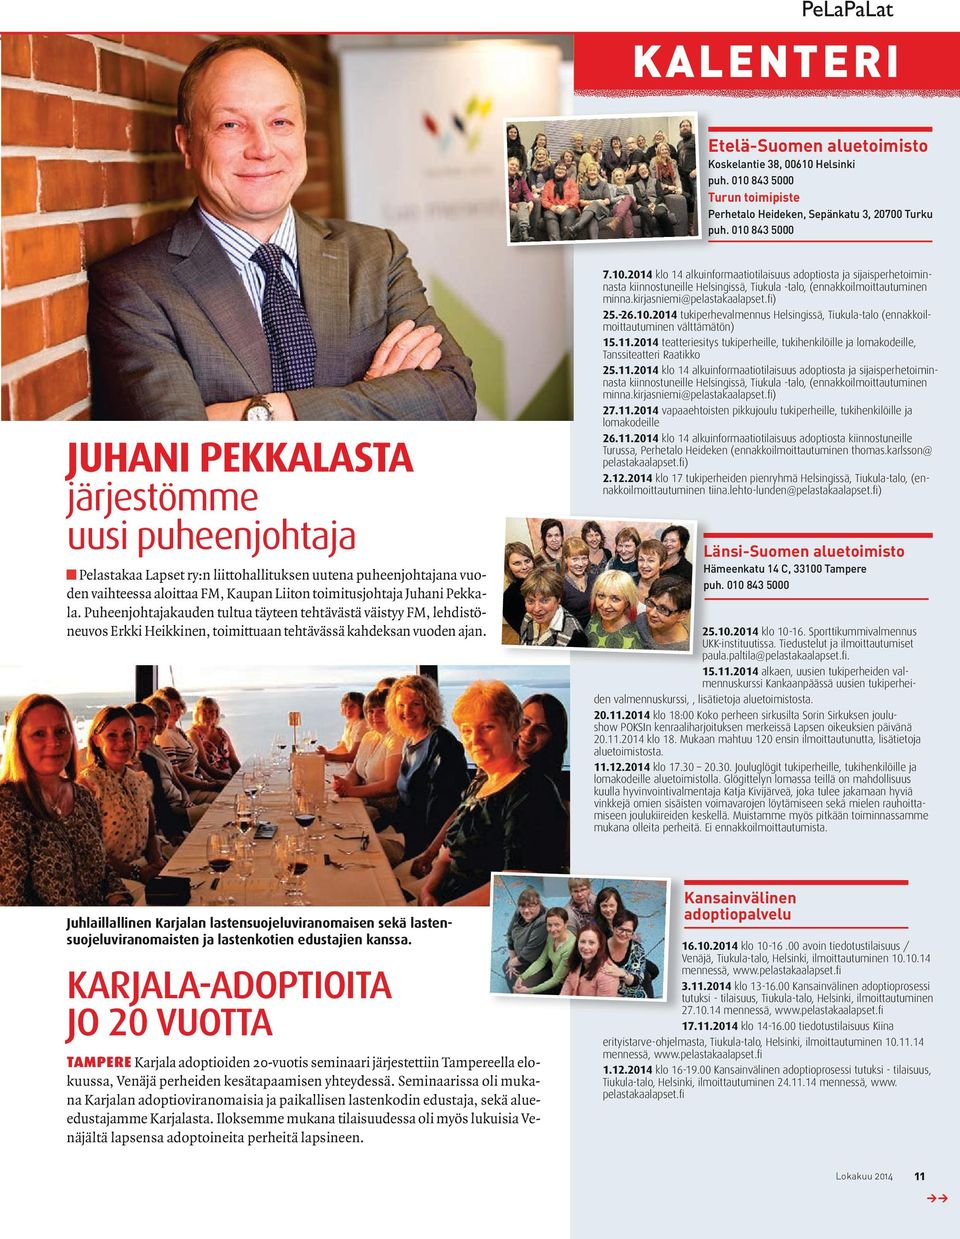 Puheenjohtajakauden tultua täyteen tehtävästä väistyy FM, lehdistöneuvos Erkki Heikkinen, toimittuaan tehtävässä kahdeksan vuoden ajan. 3.5.2014 klo 12 16 Nuorten treffit Helsingissä, Tiukula-talo 7.